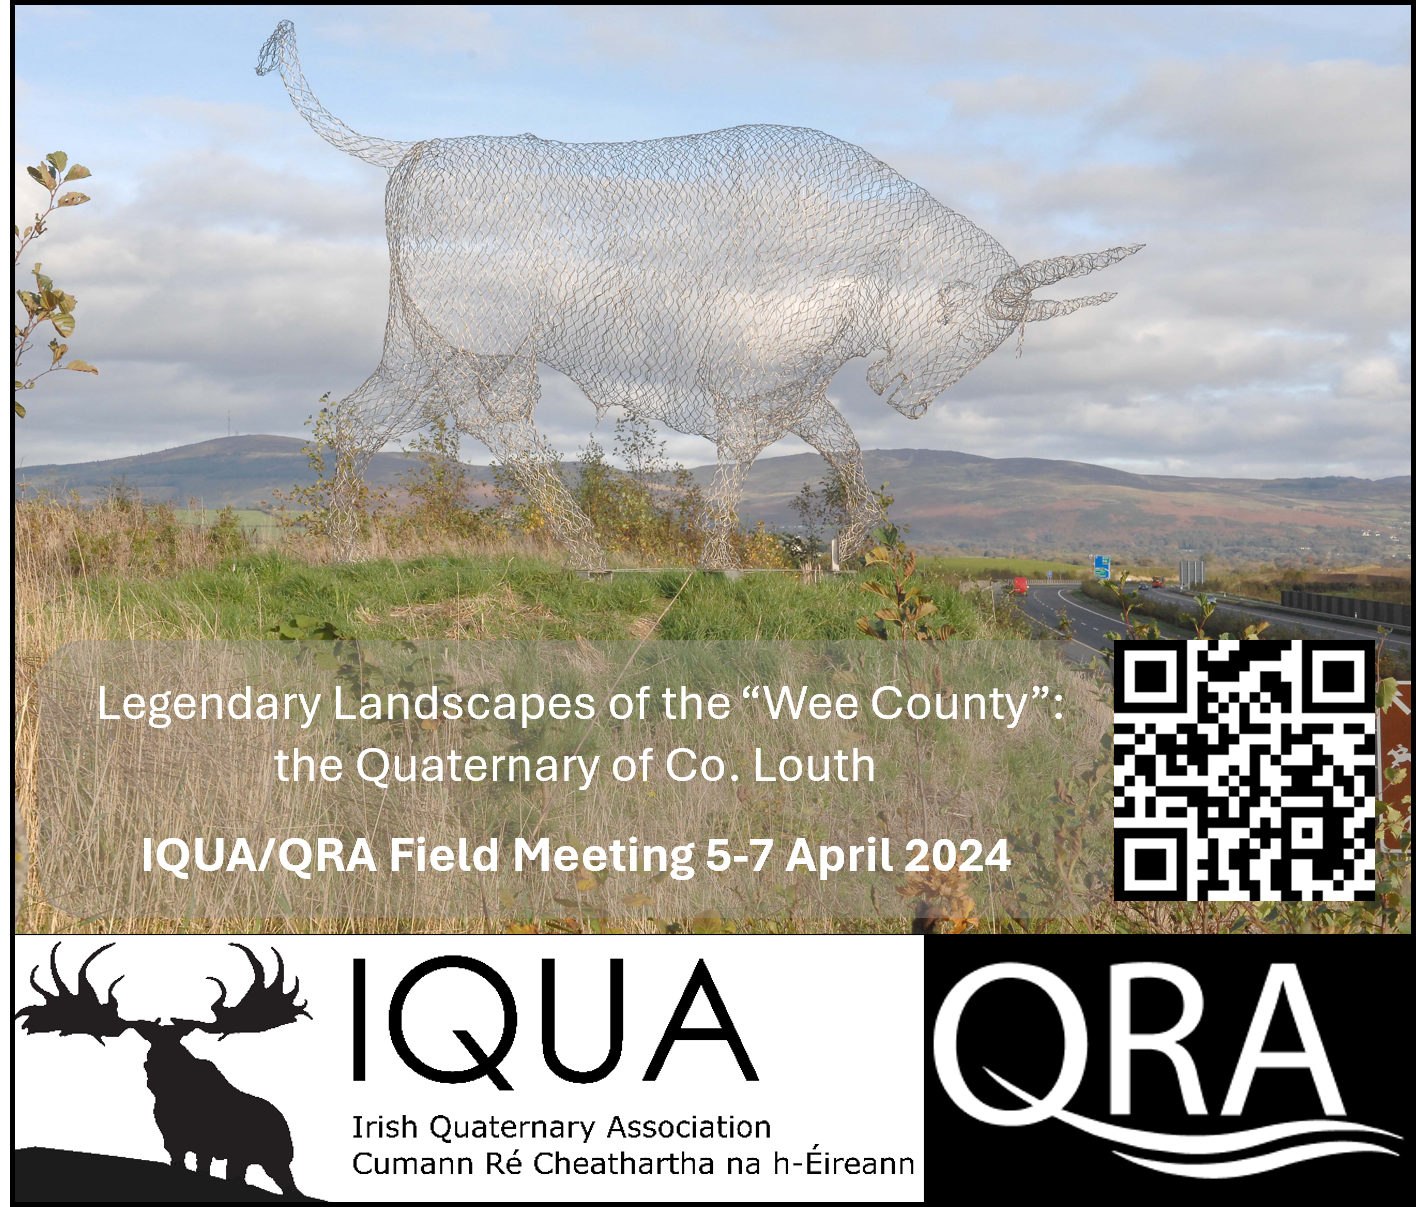 IQUA/QRA Spring Field Meeting 2024, 5-7 April